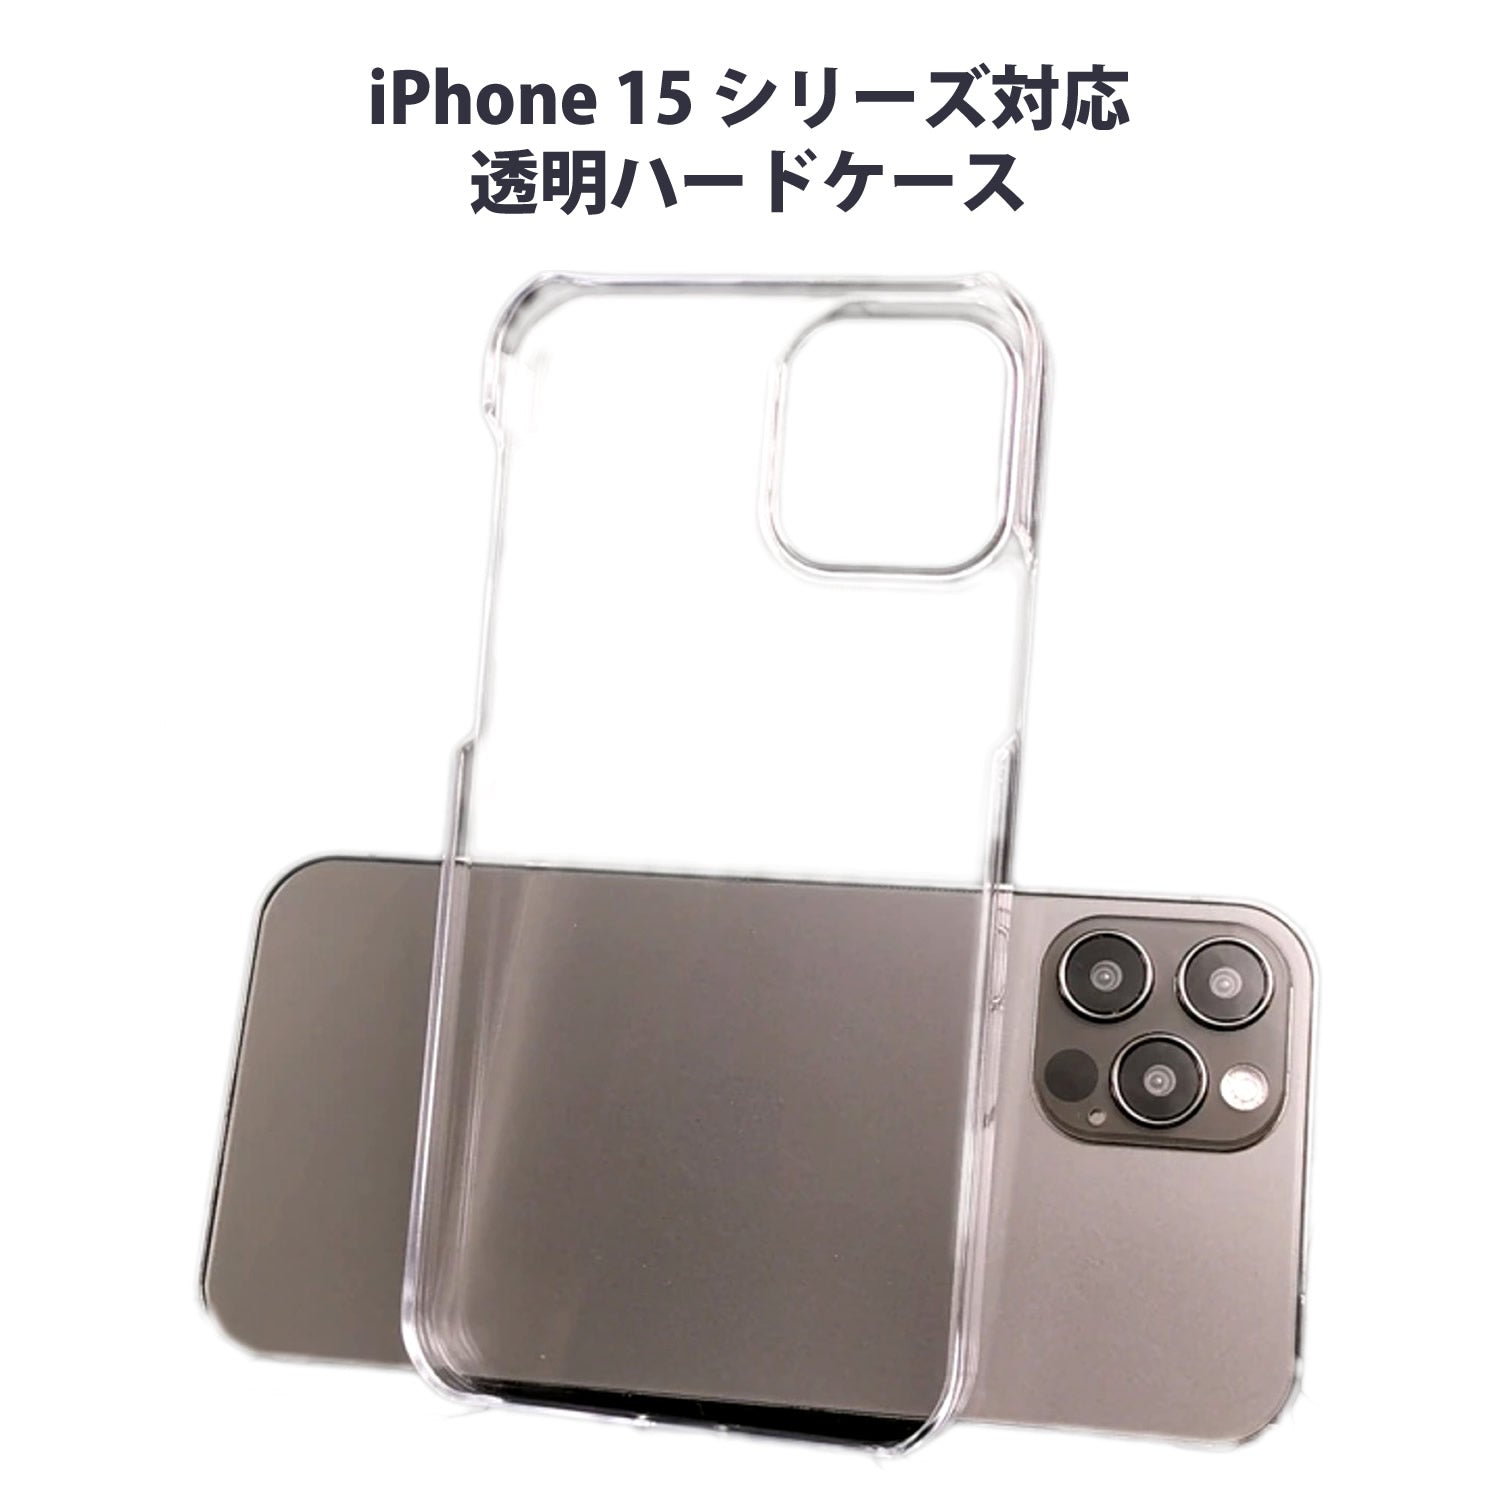 iPhone 15 シリーズ対応 透明PCクリアカバー ハードケース iPhone 14